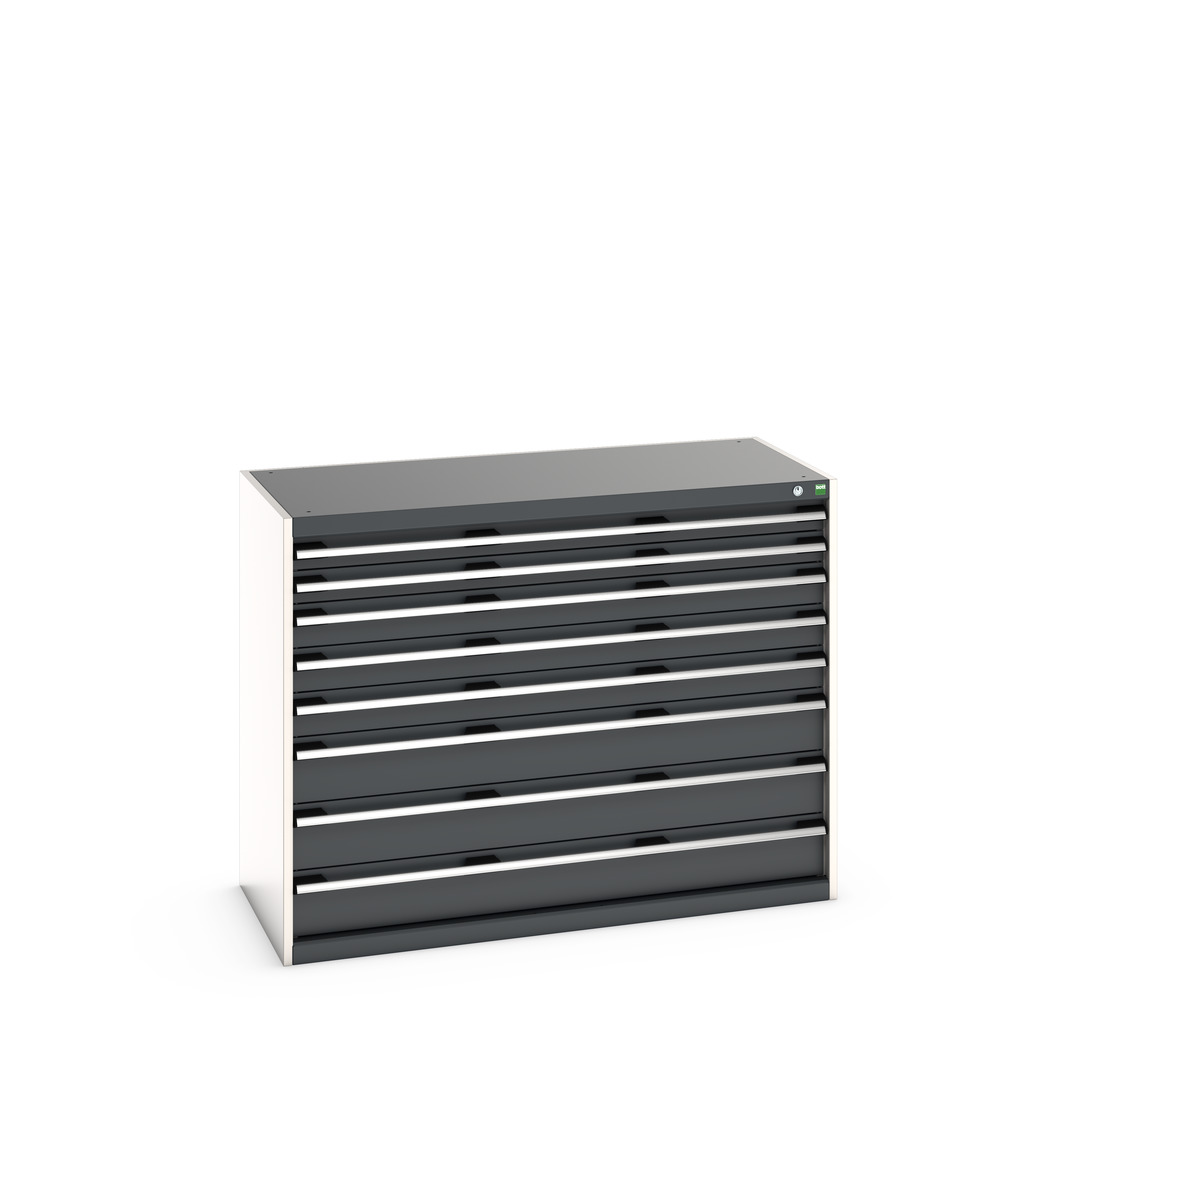 40022154.19V - cubio drawer cabinet